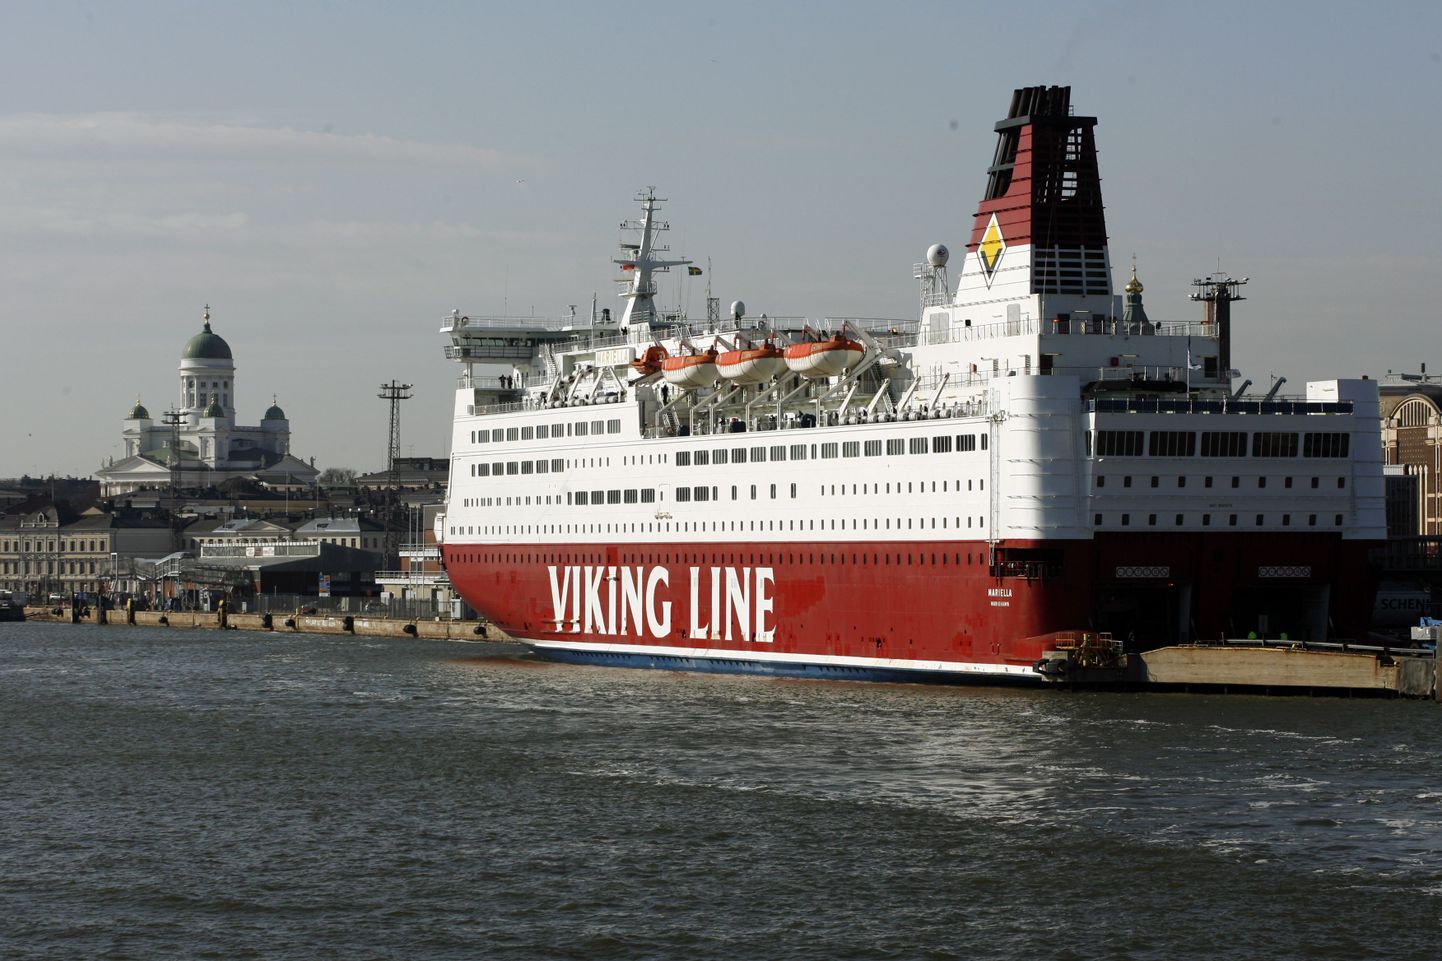 Viking Line'i reisiparvlaev Mariella Helsingi sadamas.